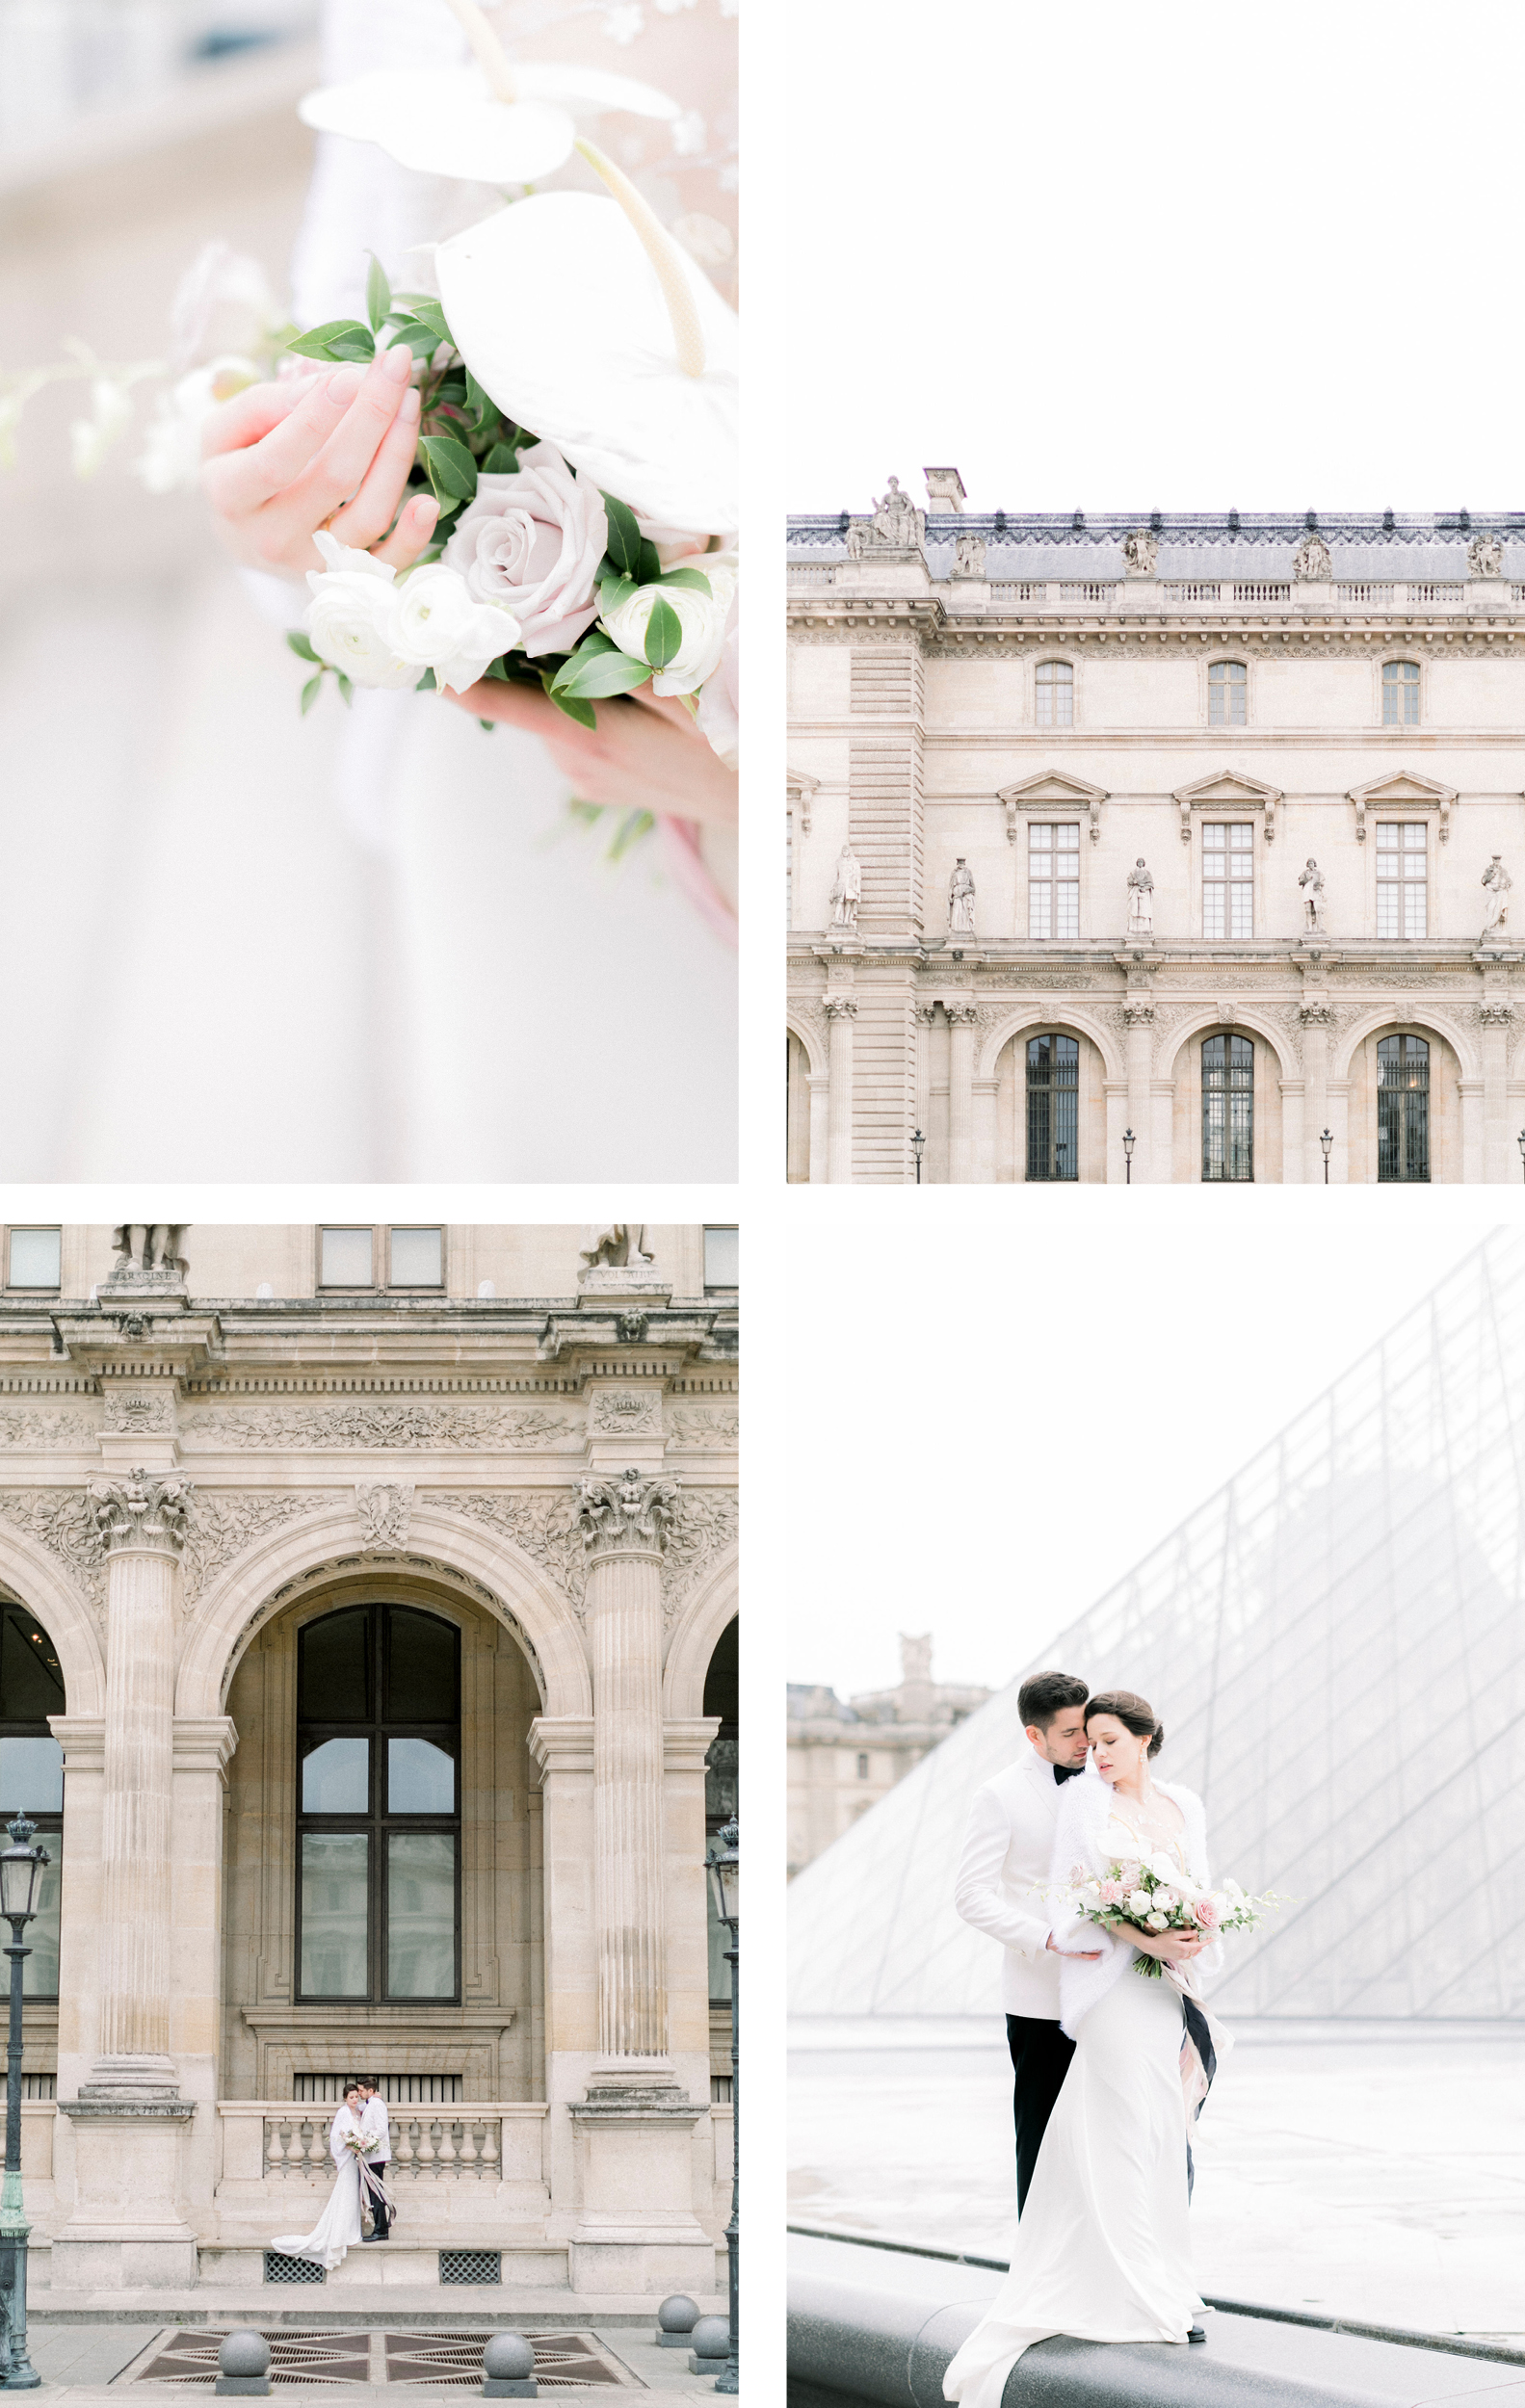 Mariage intime au cœur de la capitale  Le Louvre